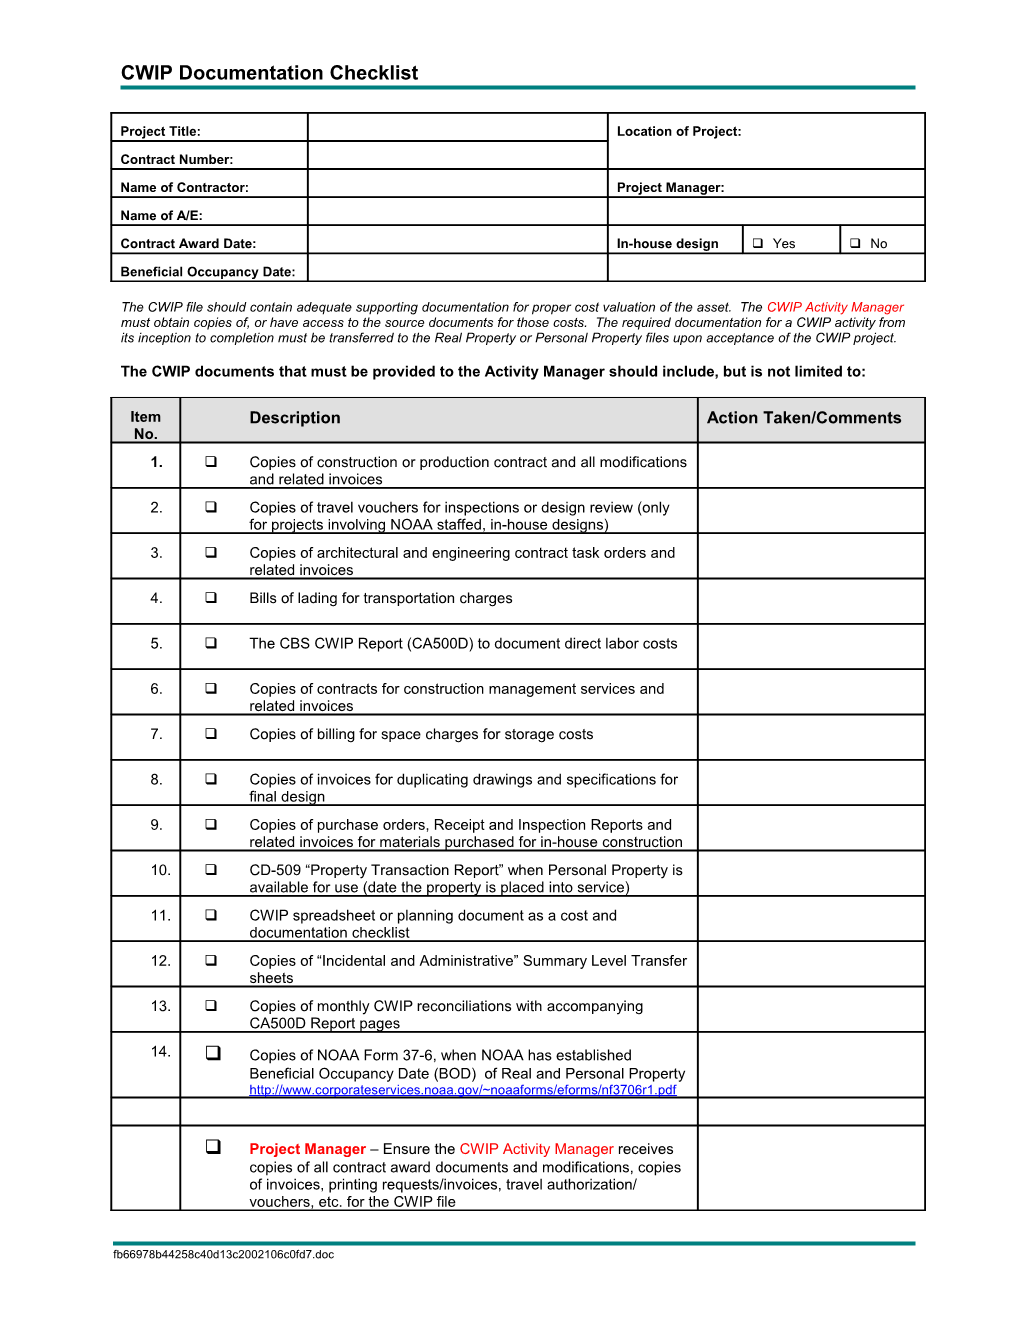 CWIP Documentation Checklist